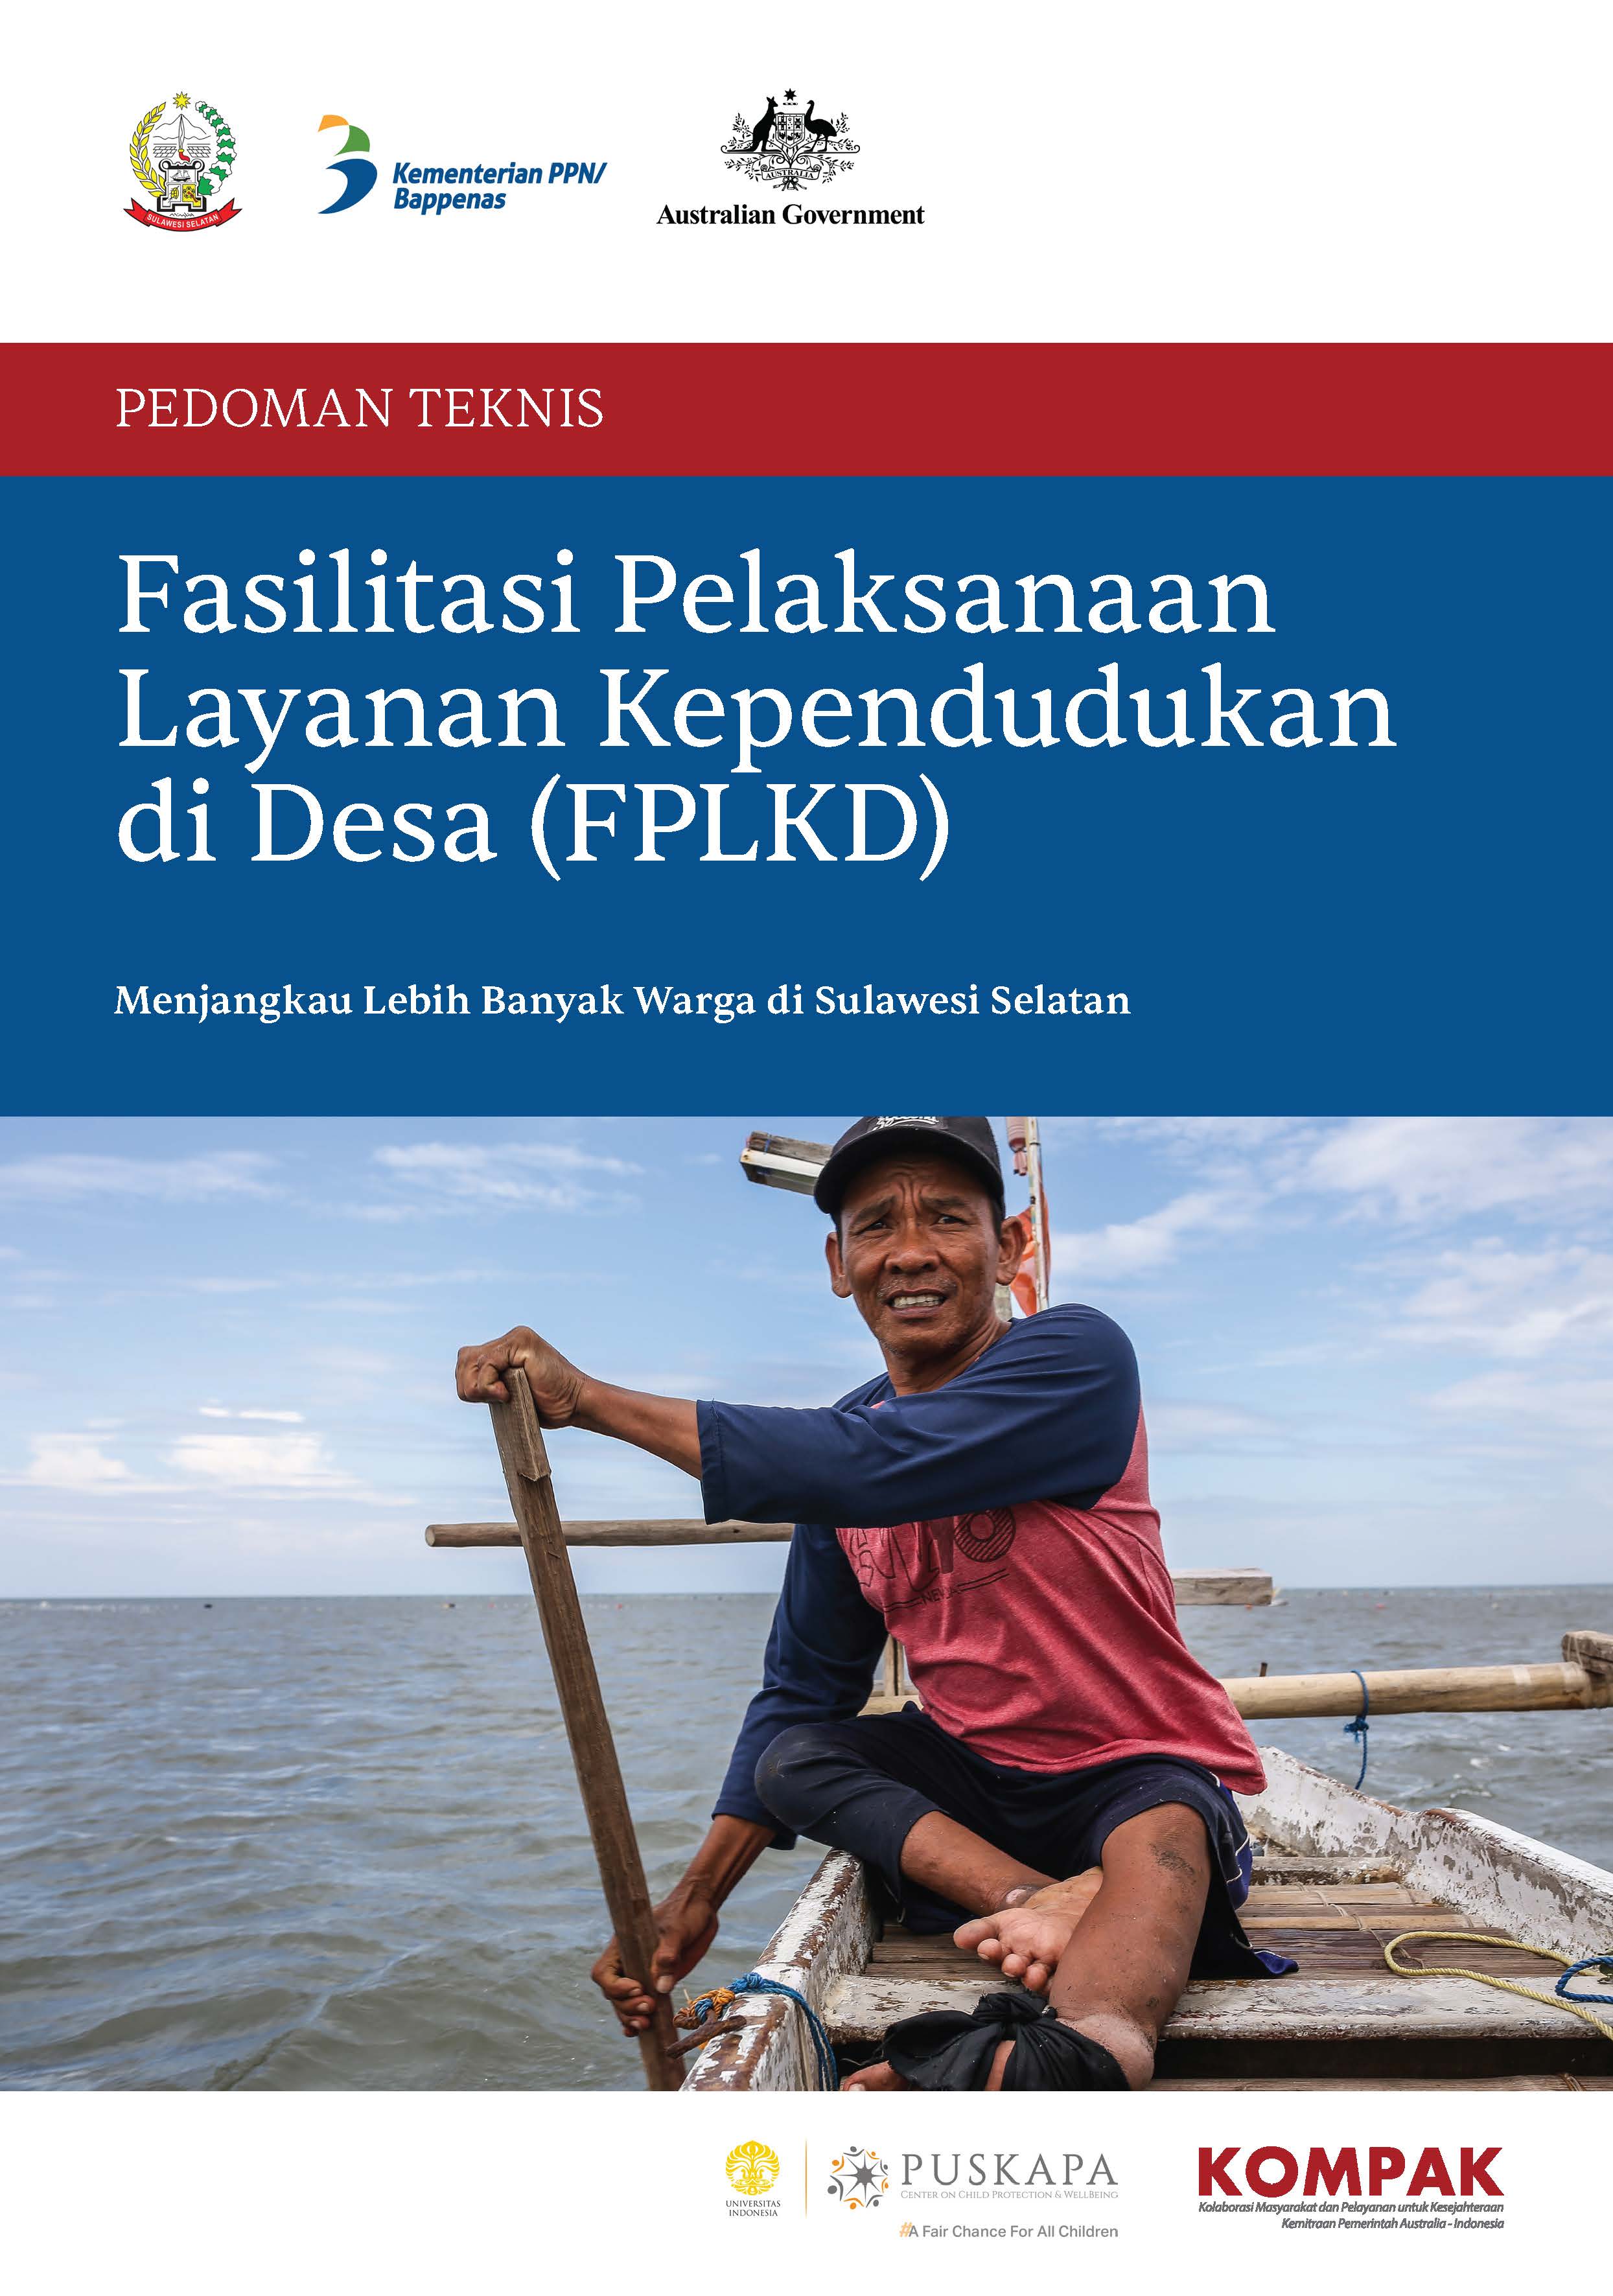 Pedoman Teknis Fasilitasi Pelaksanaan Layanan Kependudukan di Desa (FPLKD) di Sulawesi Selatan